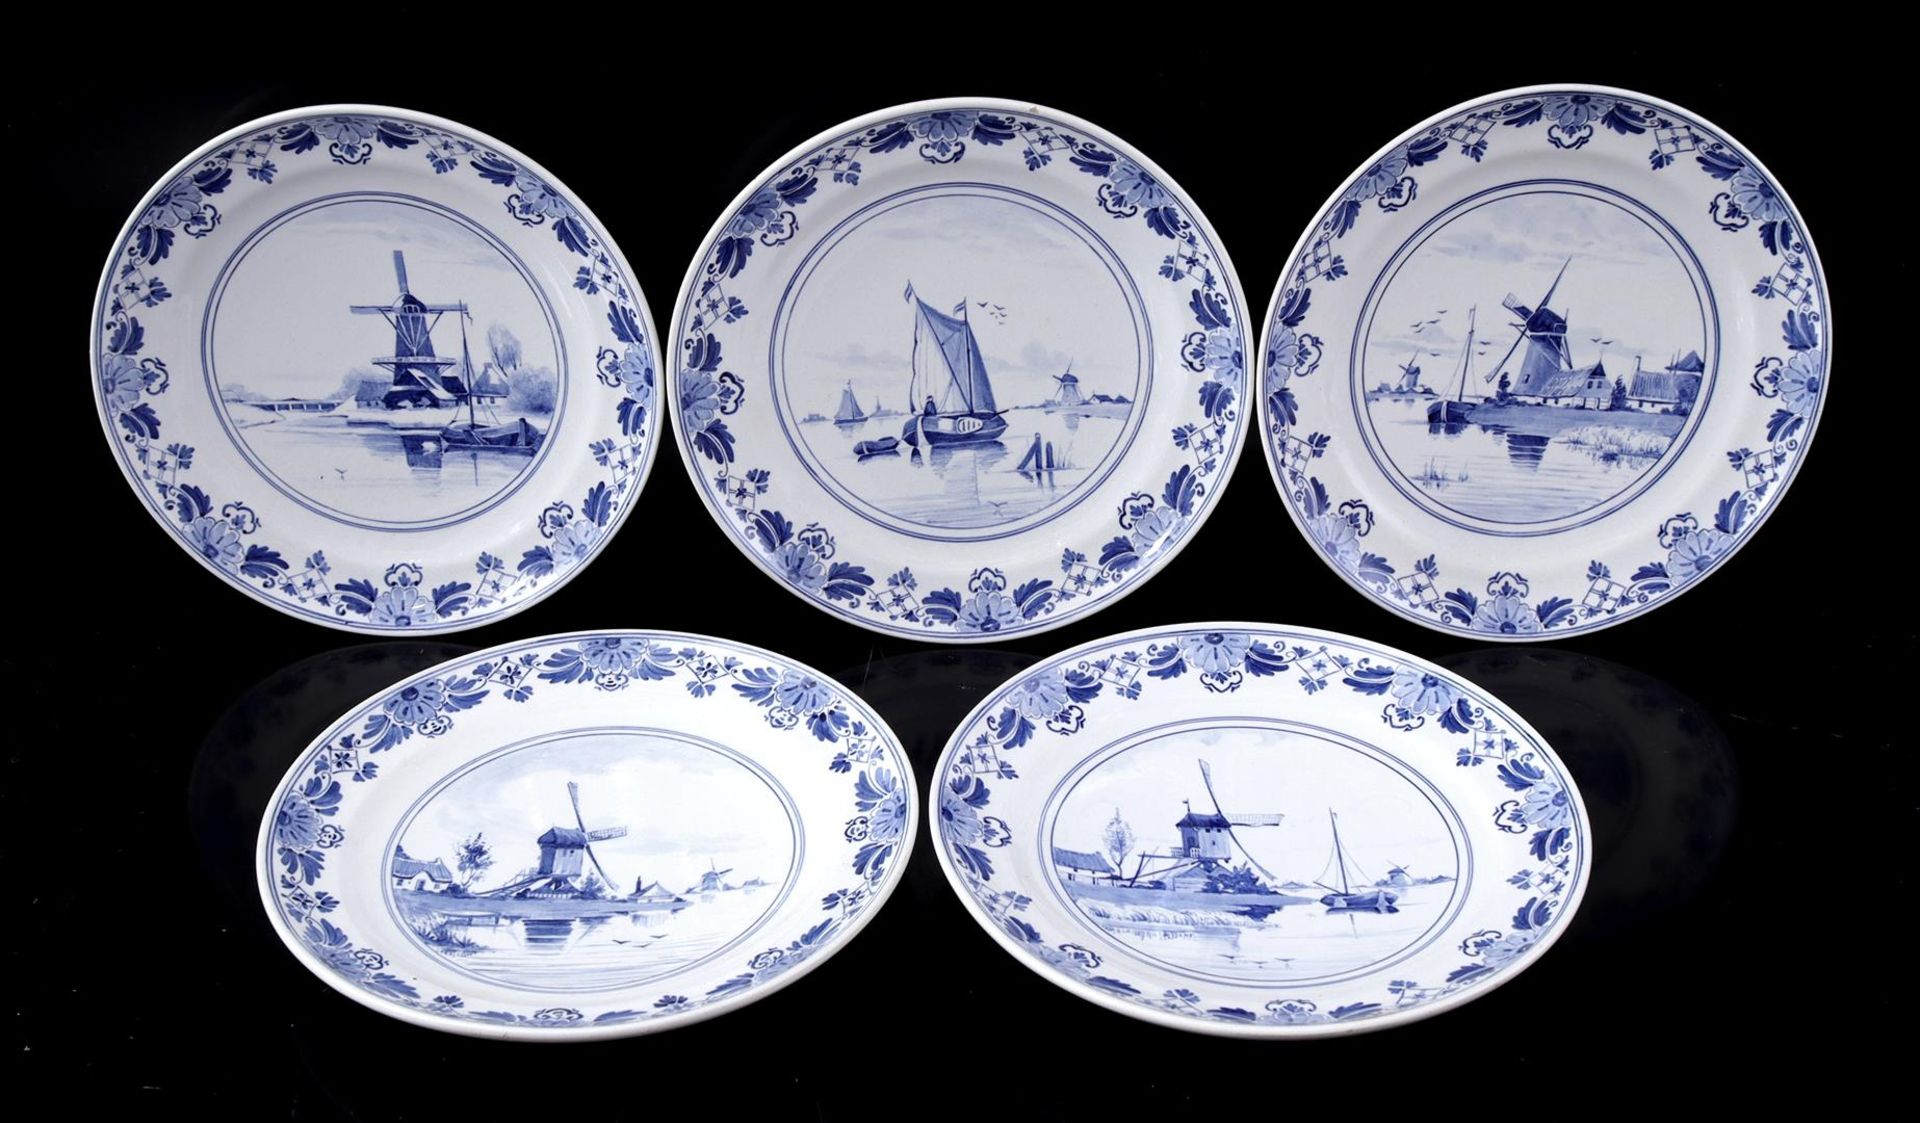 Porceleyne Fles Delft, 5 earthenware dishes